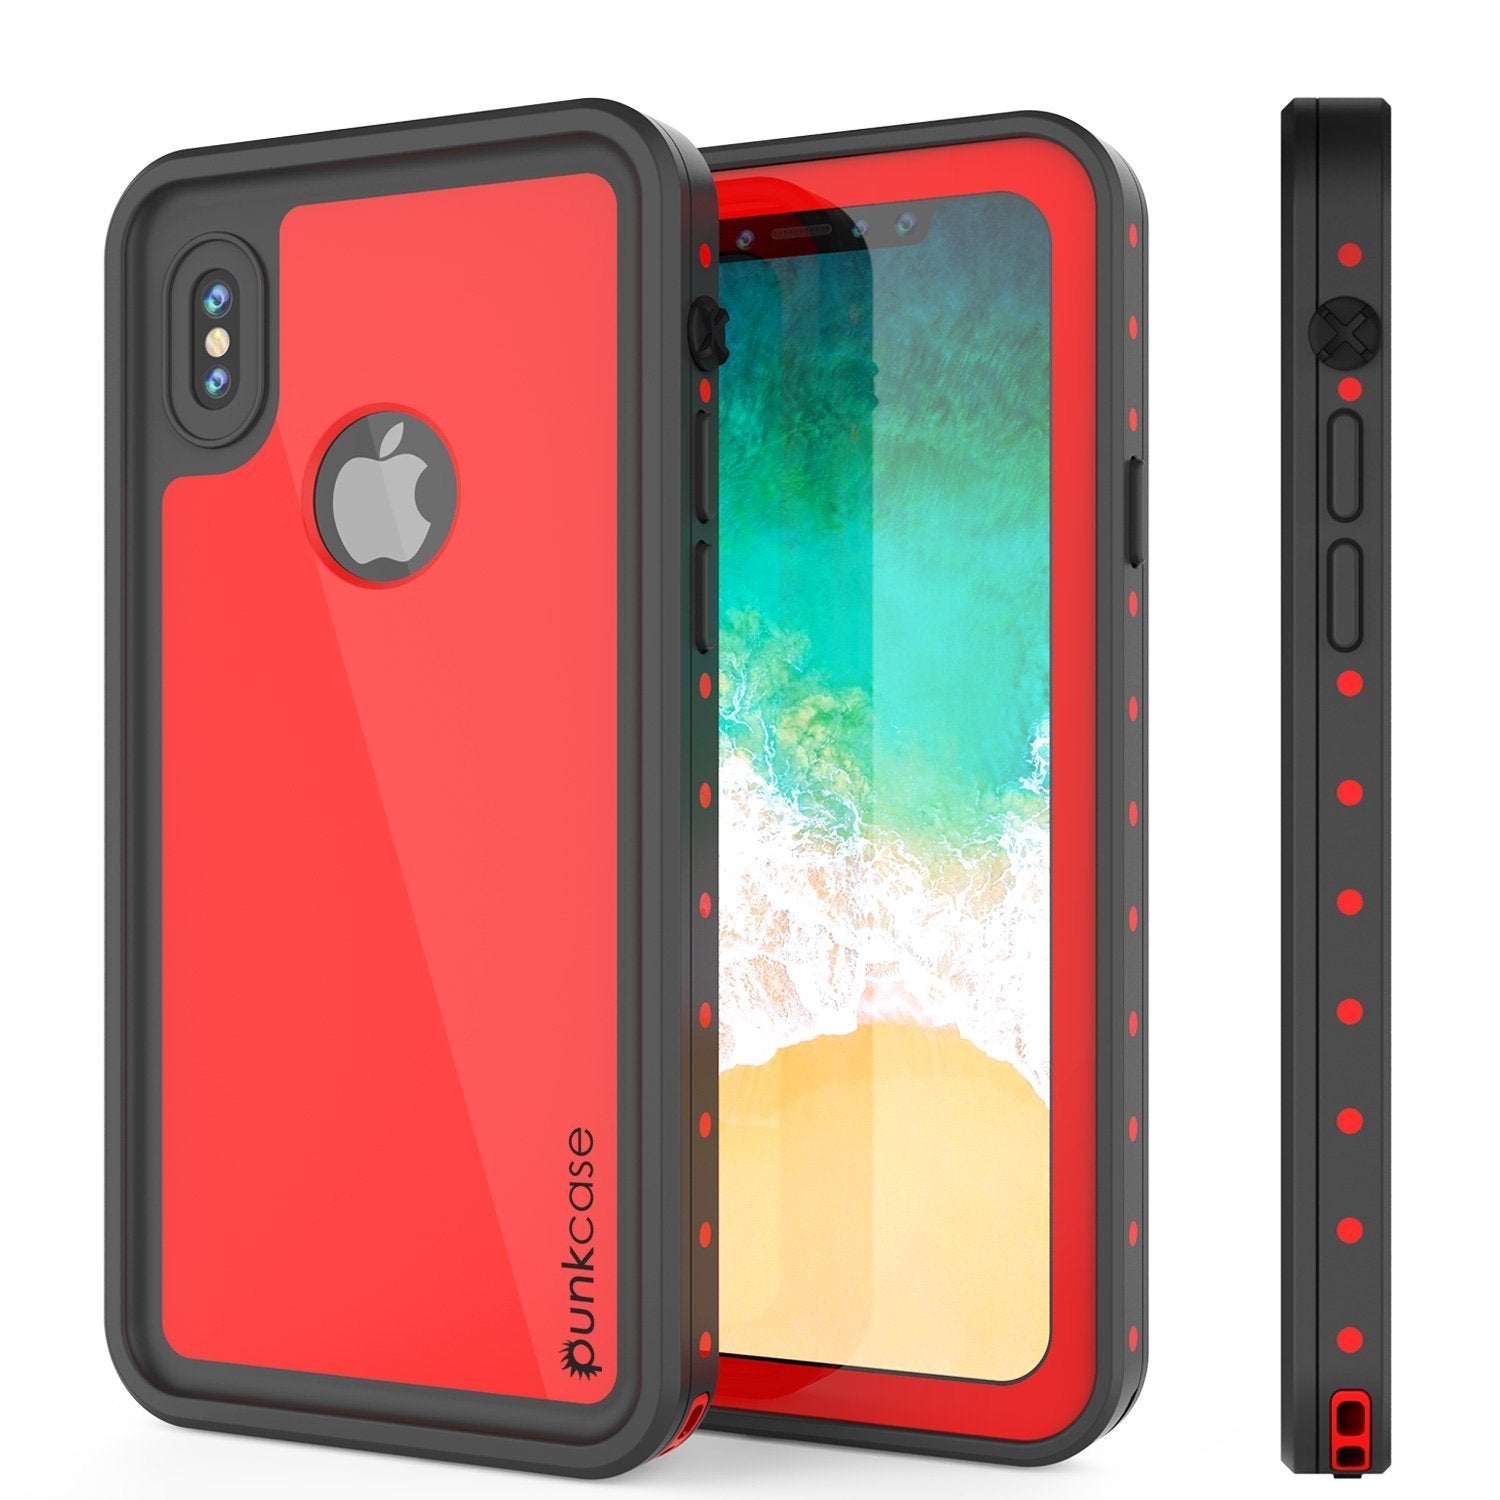 iPhone XR Waterproof IP68 Case, Punkcase [Red] [StudStar Series] [Slim Fit] - PunkCase NZ